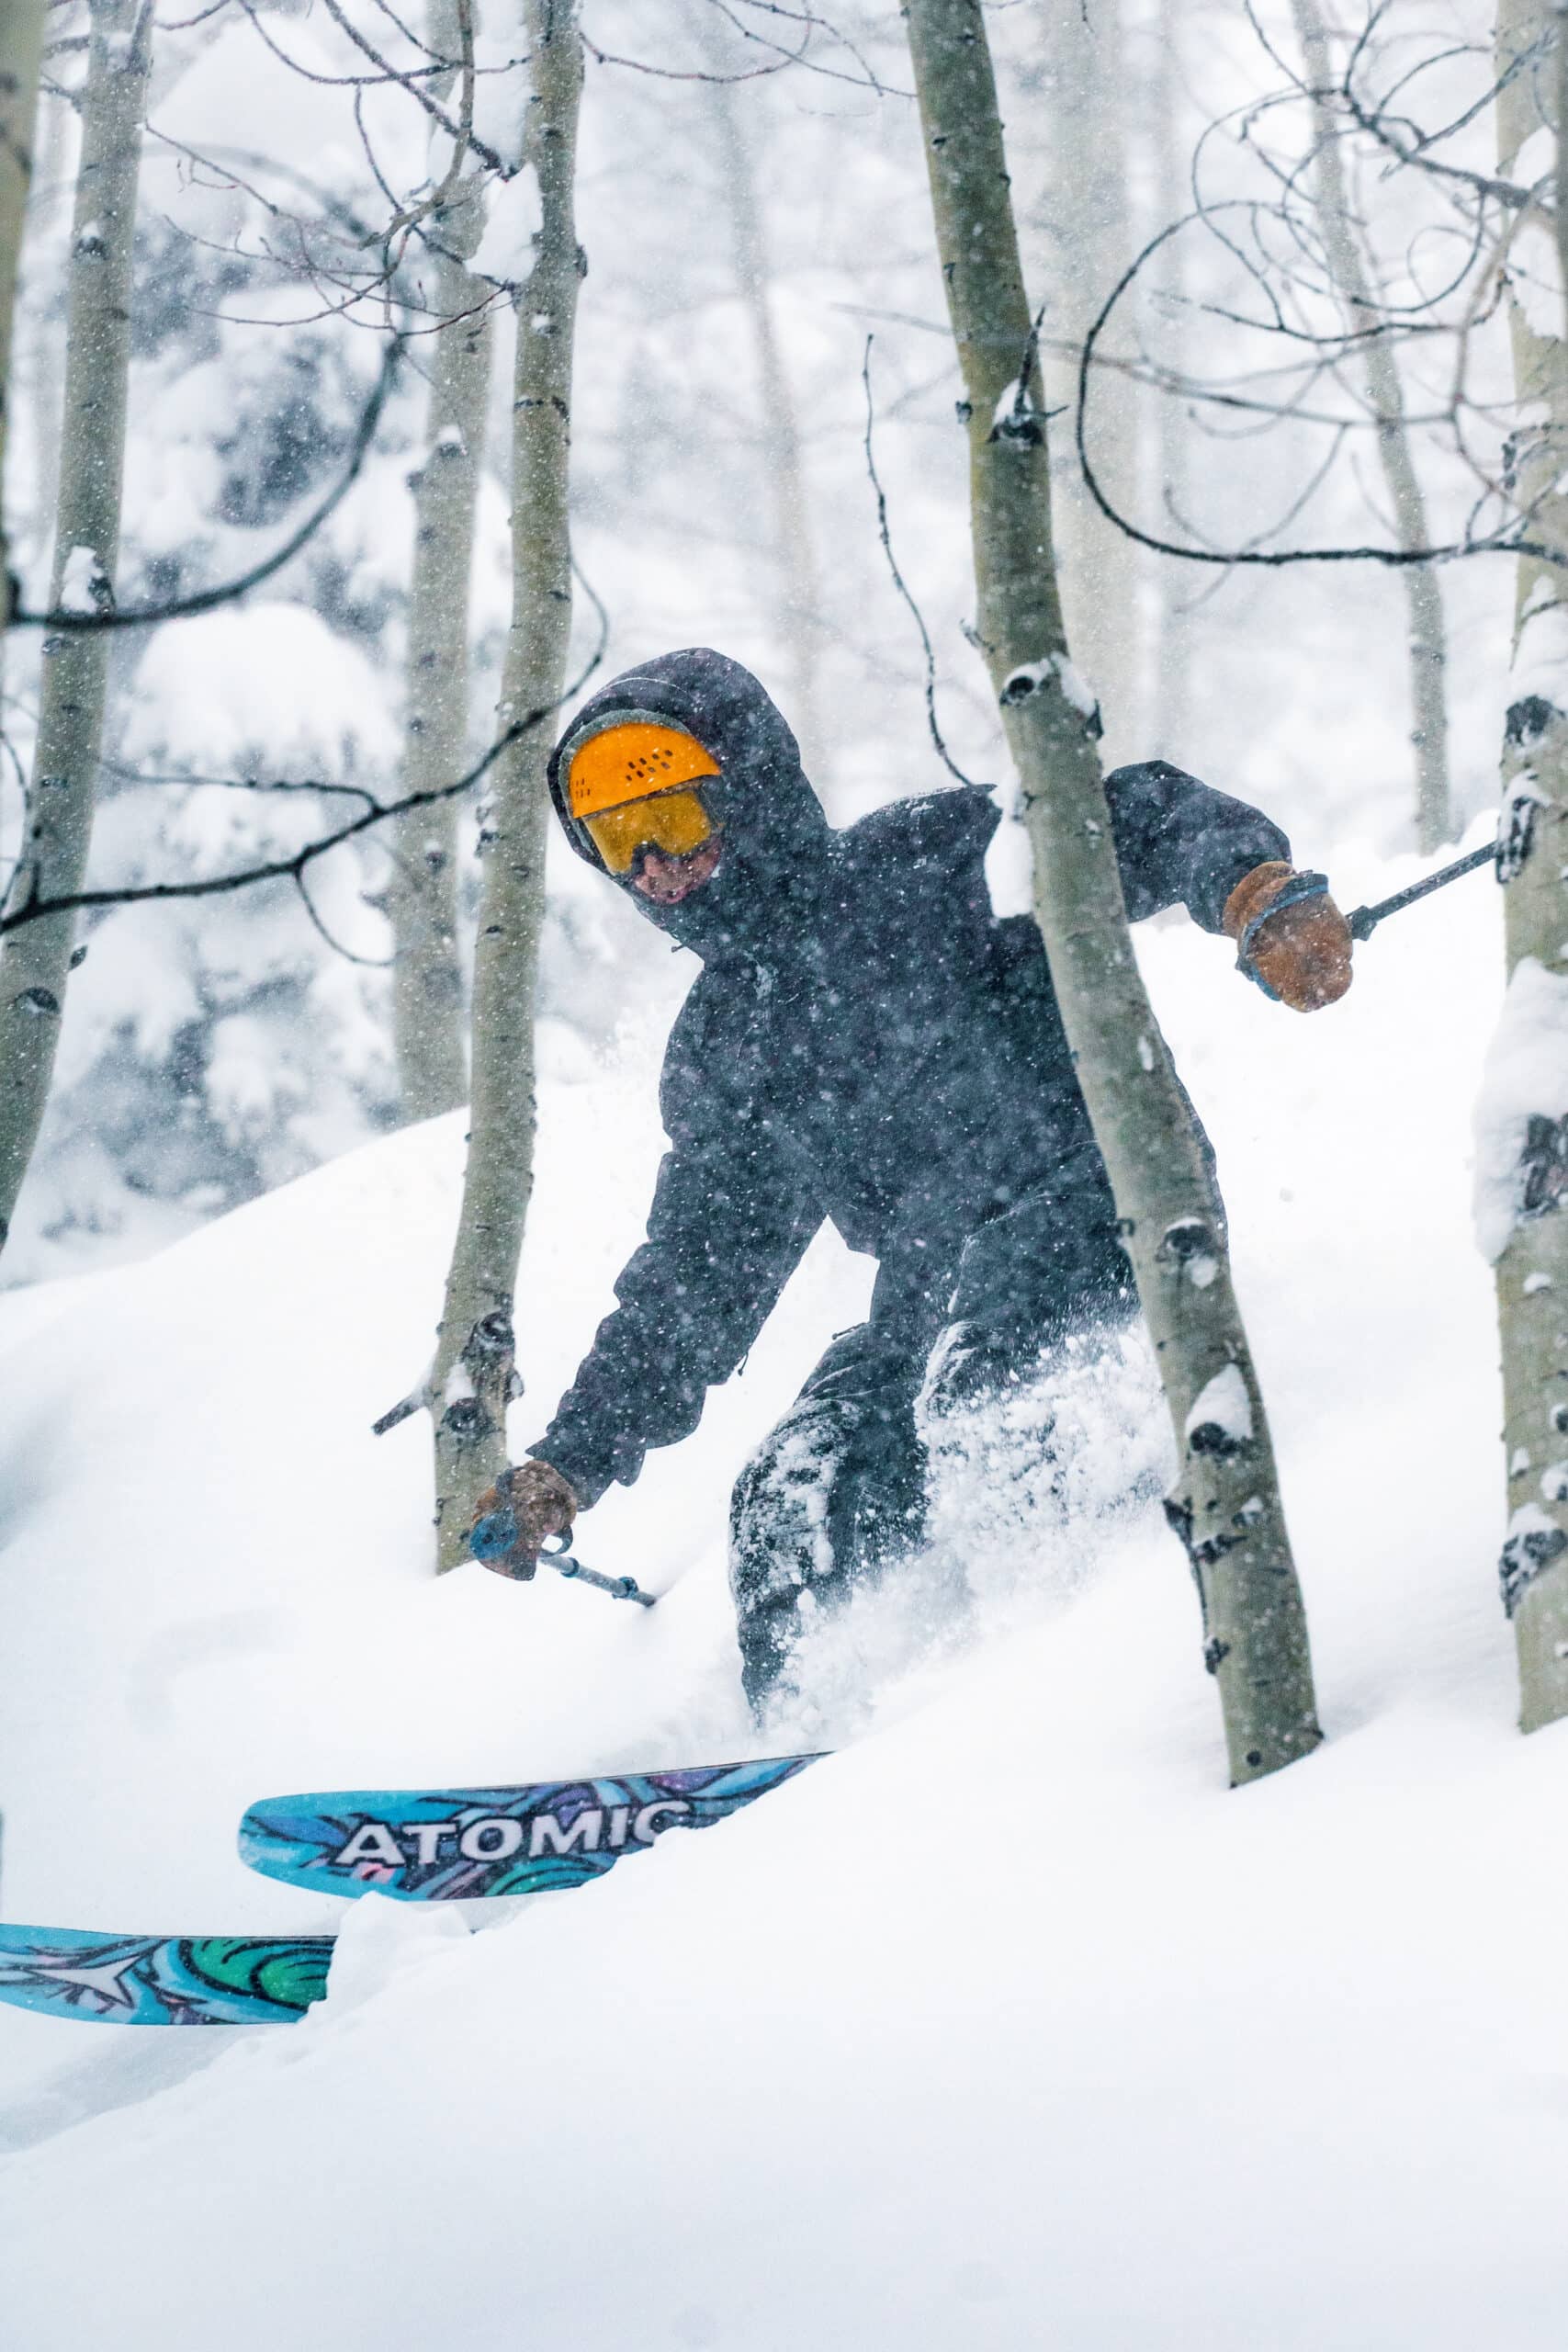 Skier enjoys powder turns through aspen trees